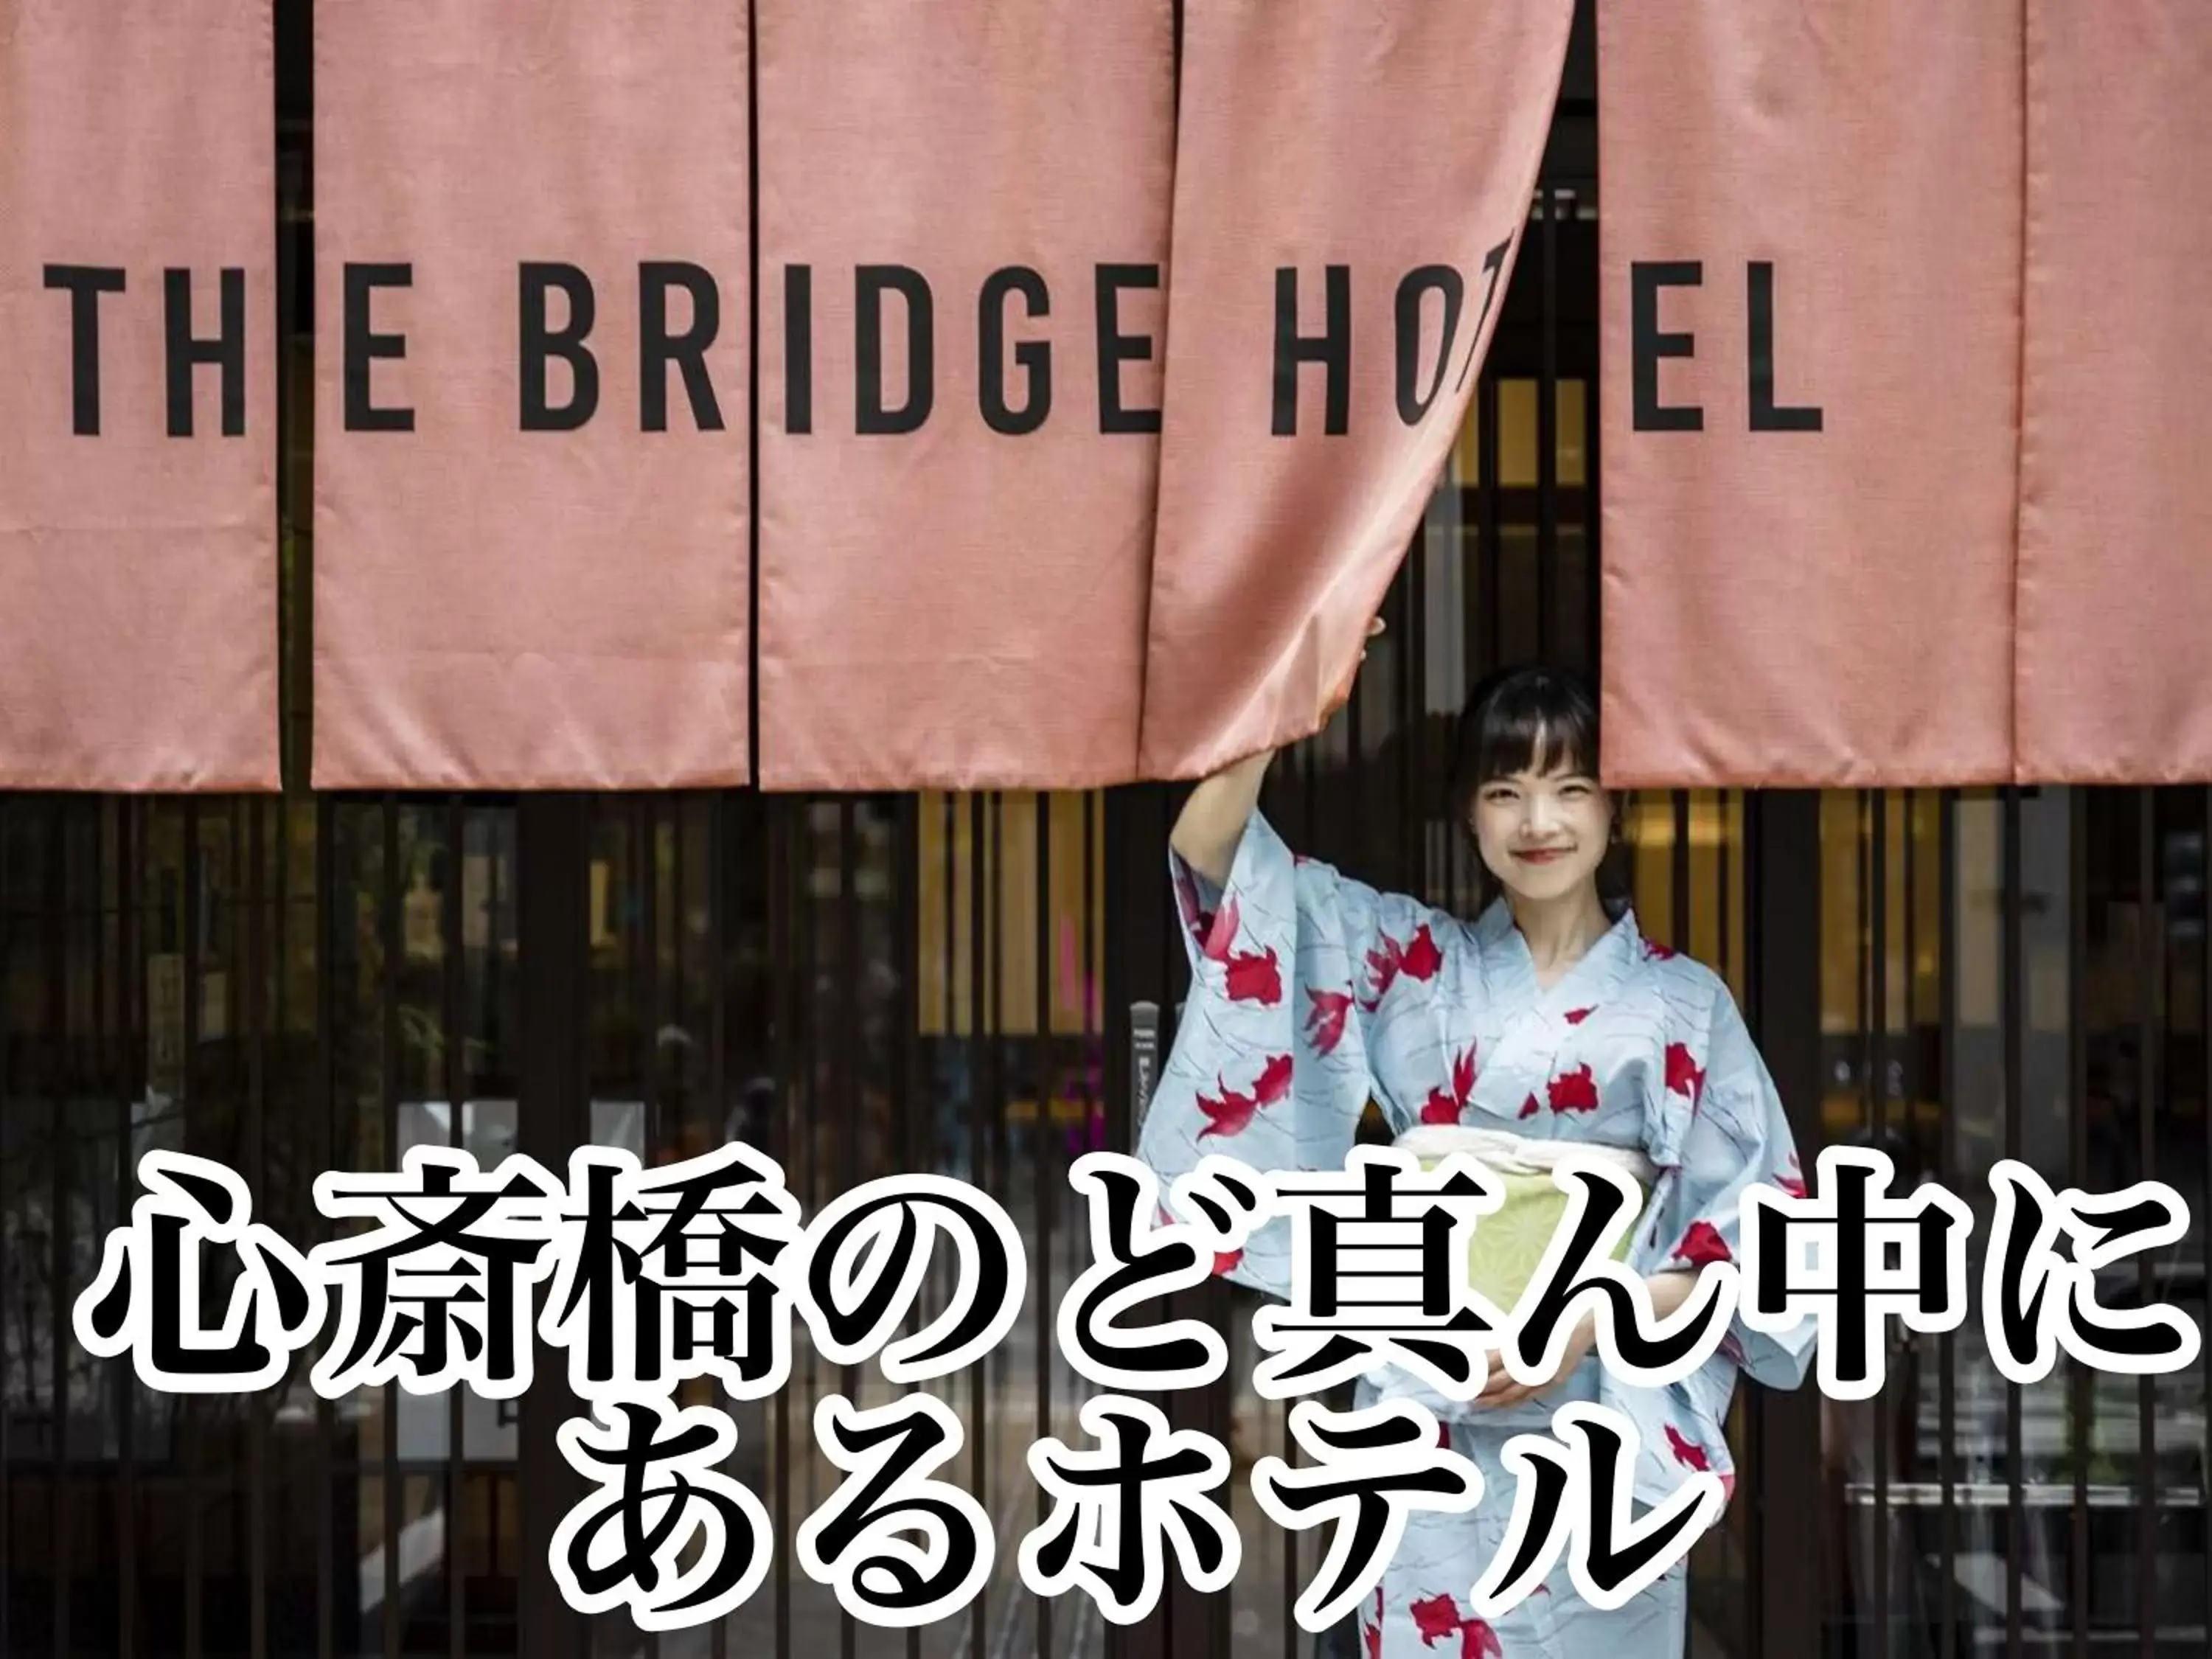 Property logo or sign, Property Logo/Sign in The Bridge Hotel Shinsaibashi